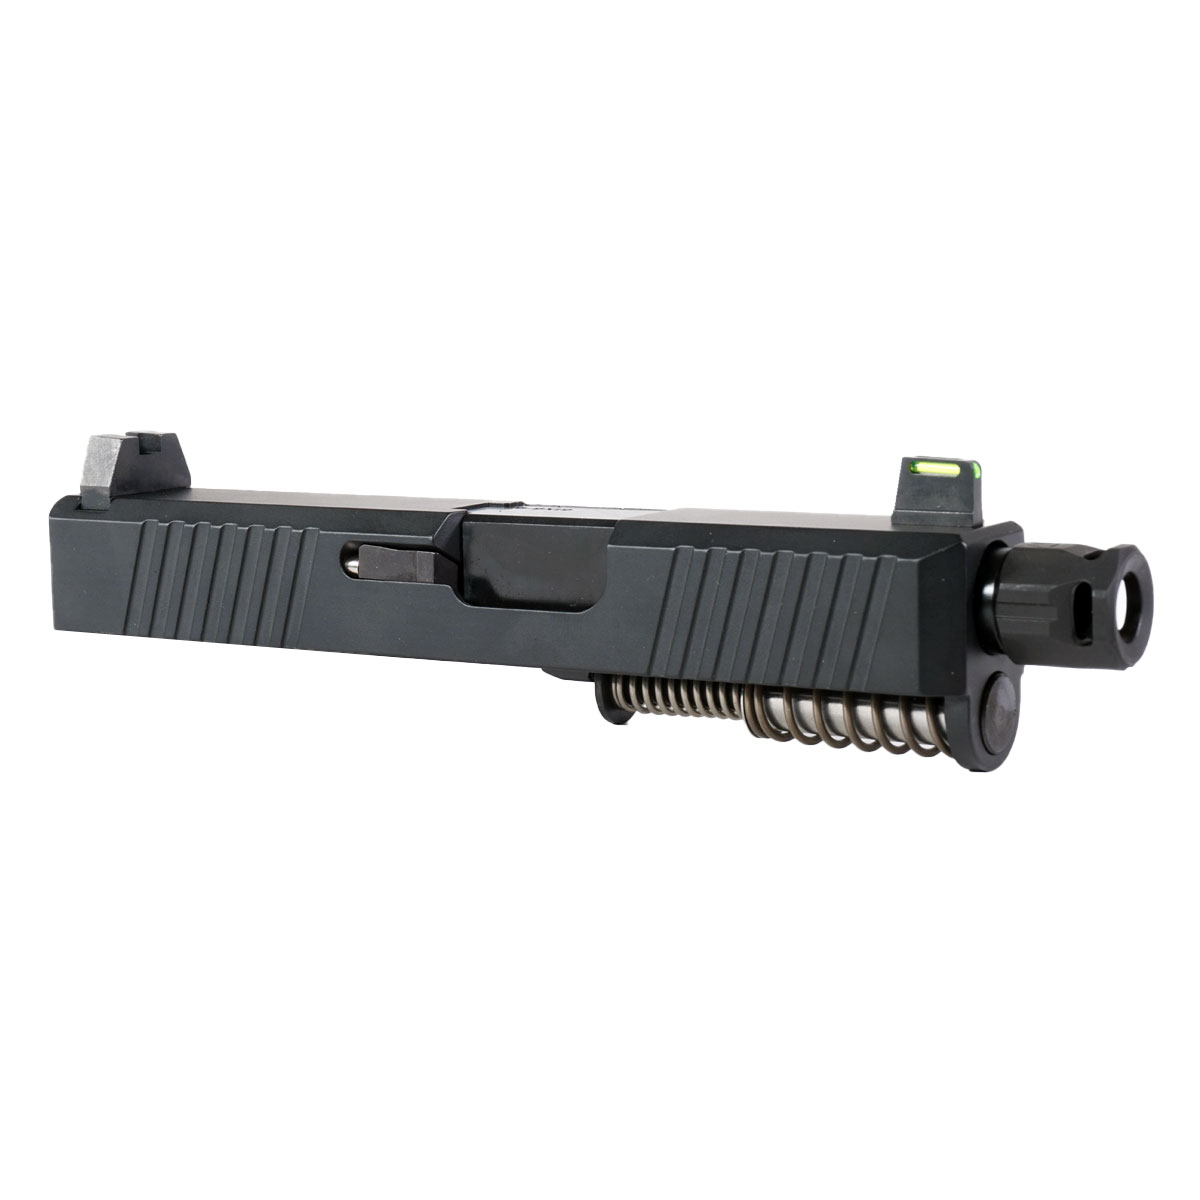 DTT 'Providence Power' 9mm Complete Slide Kit - Glock 26 Gen 1-3 Compatible